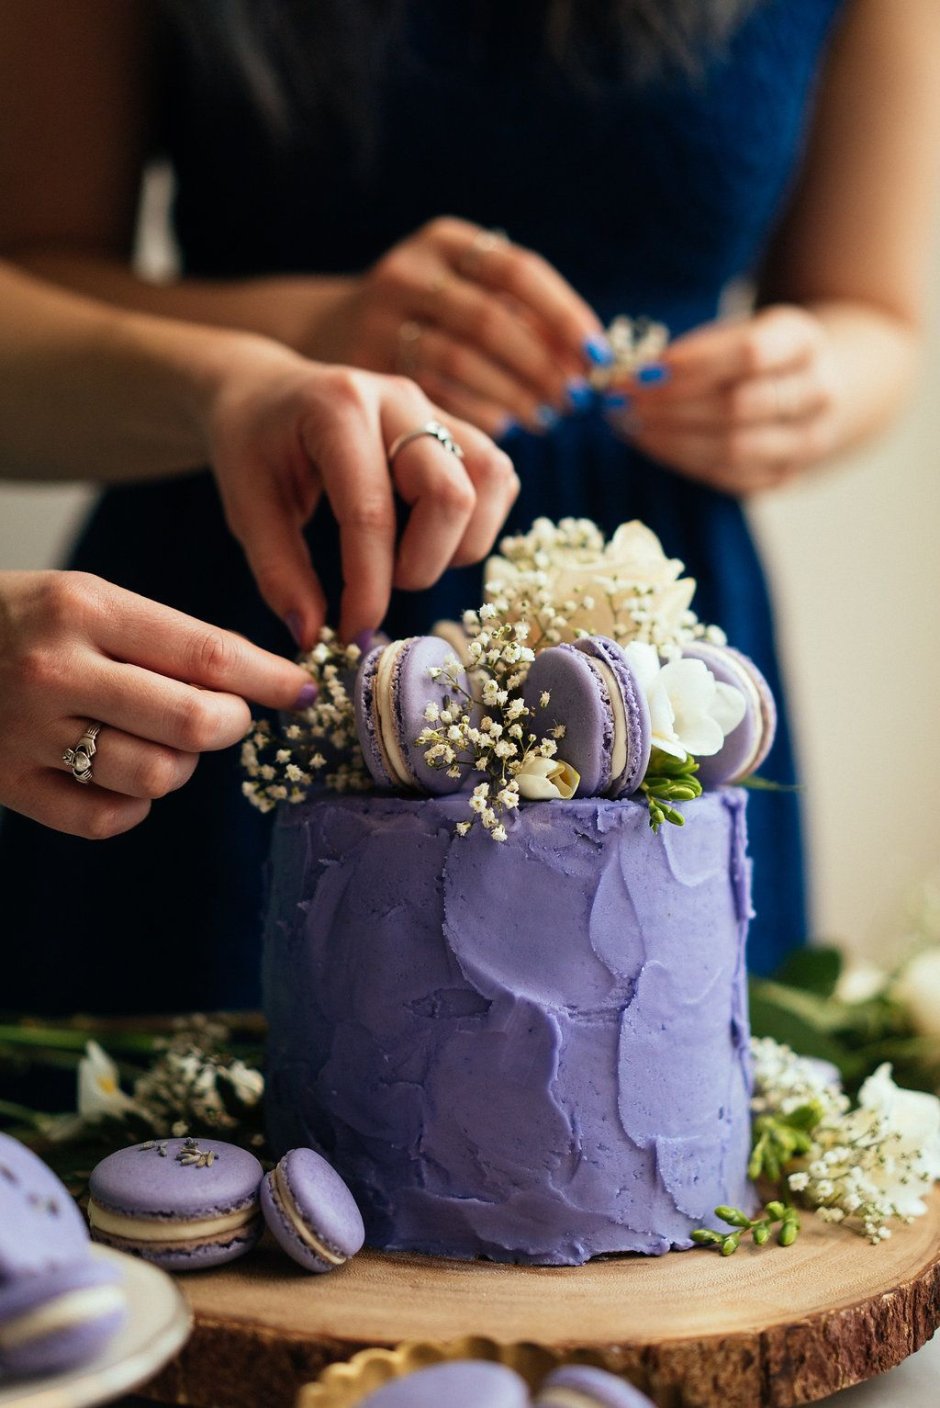 Торт на свадьбу многоярусный